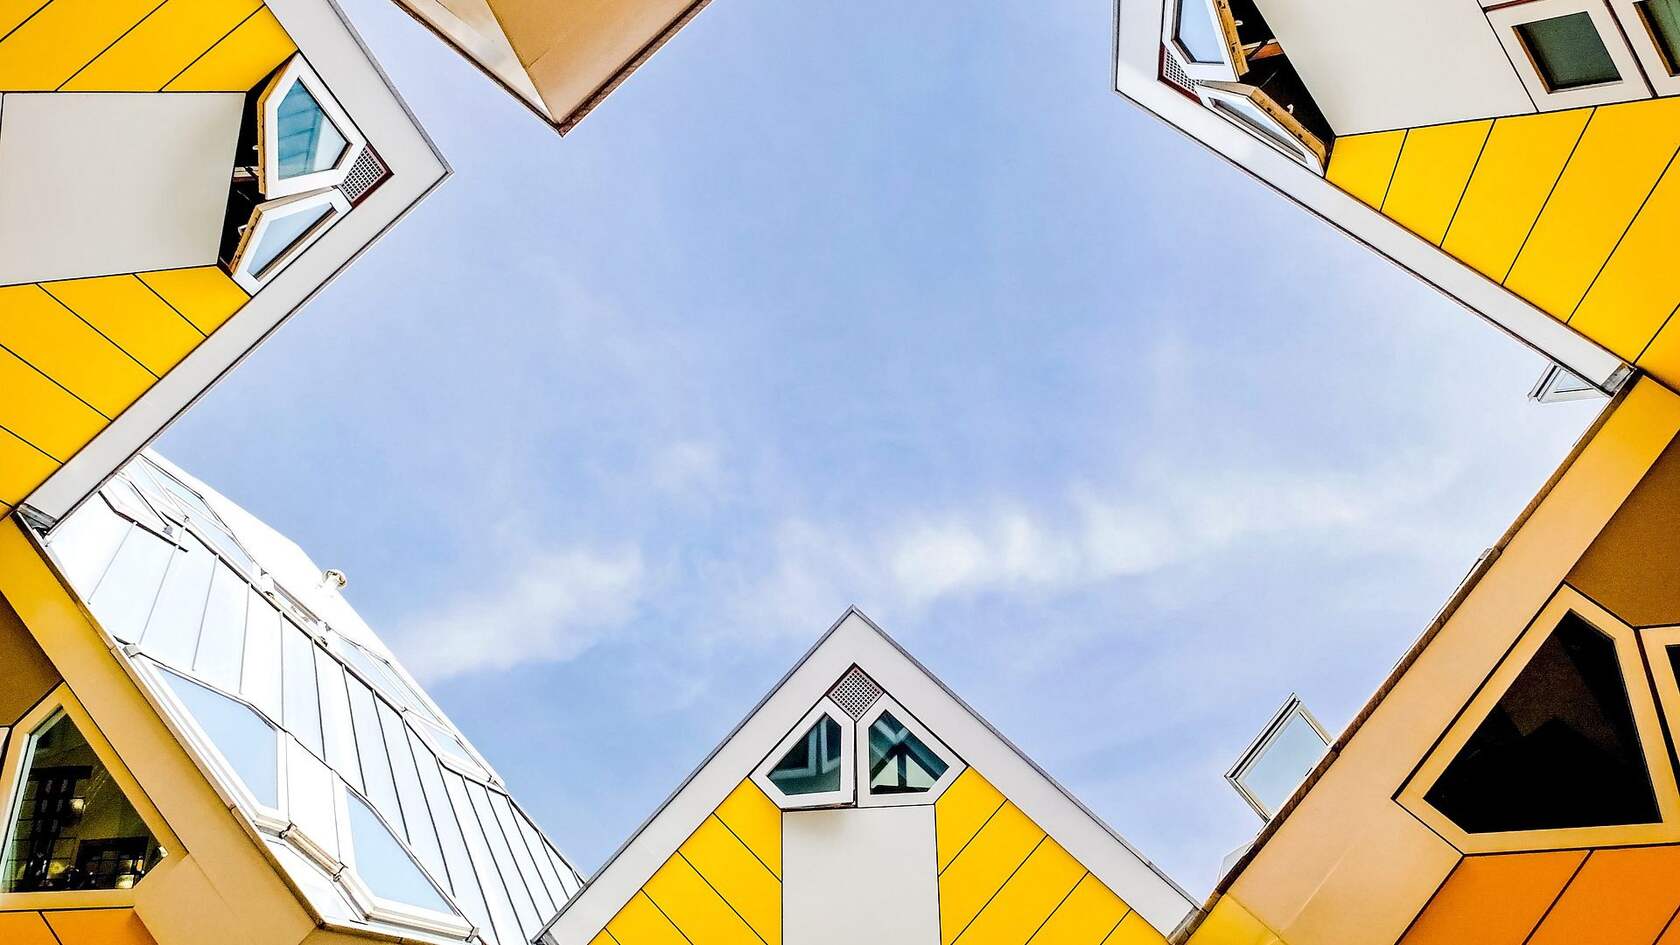 欧洲 荷兰 鹿特丹 创意 设计感十足的奇特立方体房子壁纸图片第5张图片